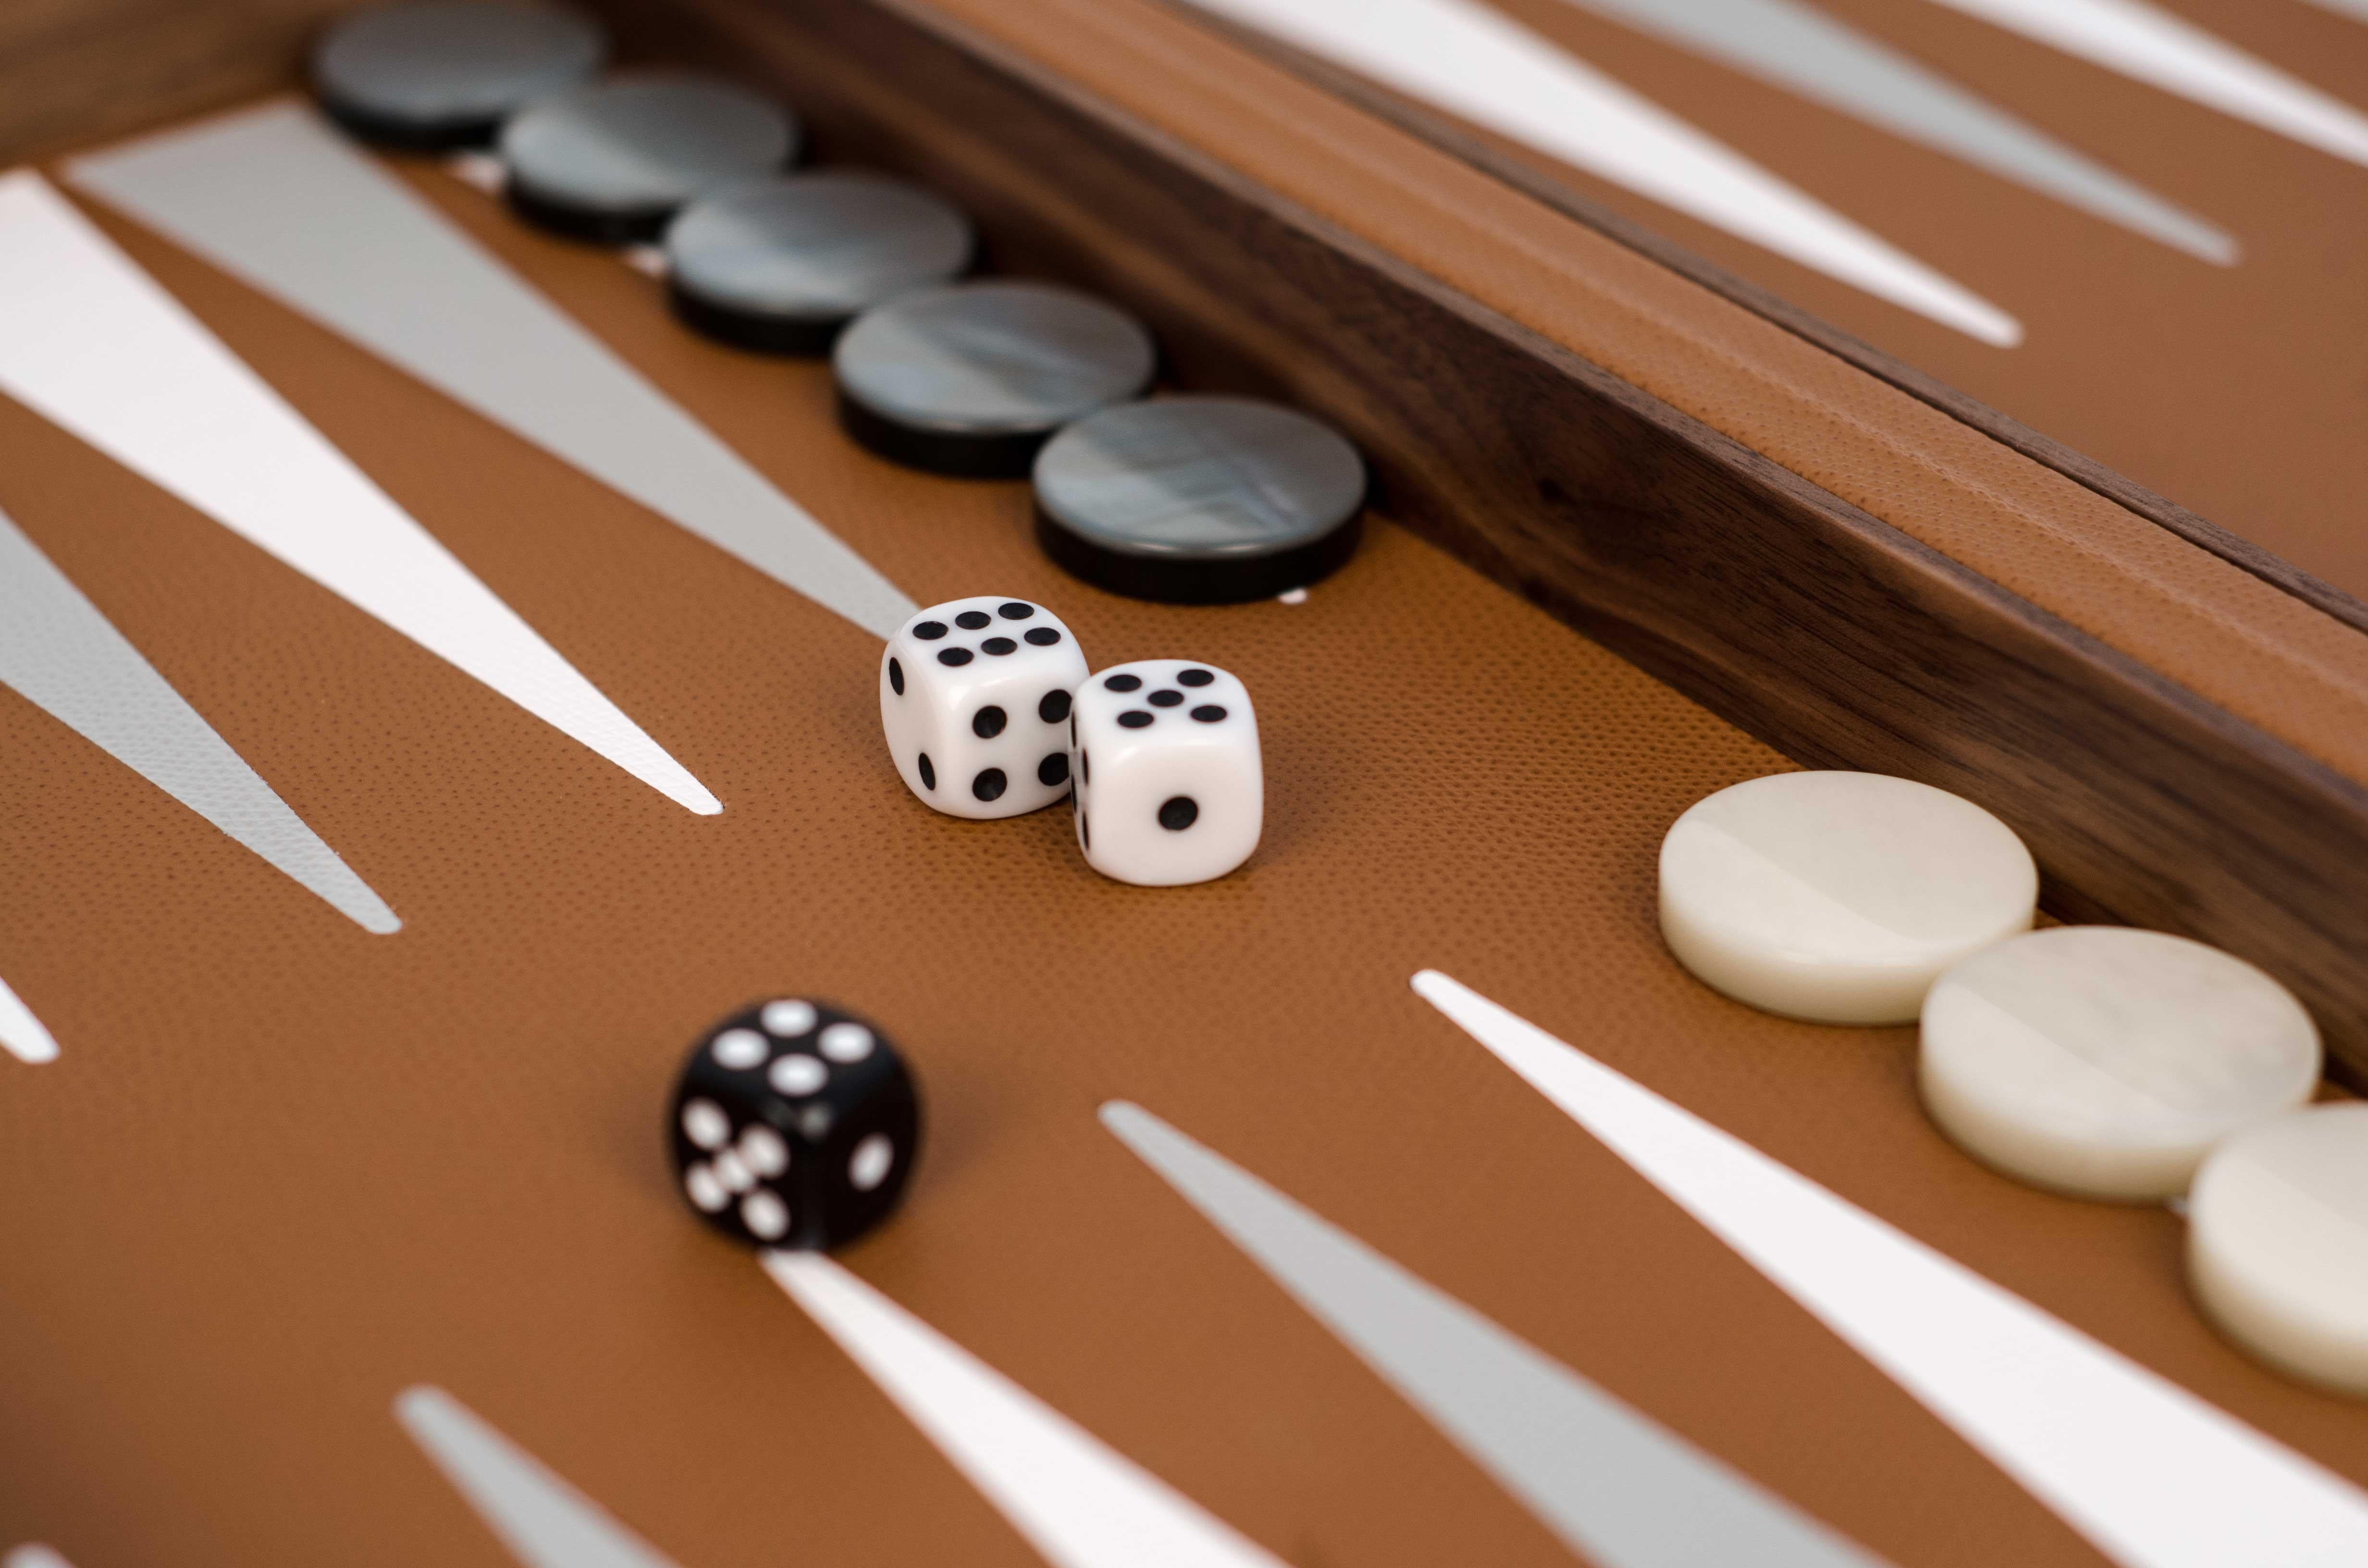 Notre set de backgammon, un must des jeux de société.

Fabriqué de manière experte en bois de noyer canaletto et habillé à l'extérieur d'un revêtement en cuir de veau texturé, son intérieur apporte une touche de couleur sur un fond crème. On ne se